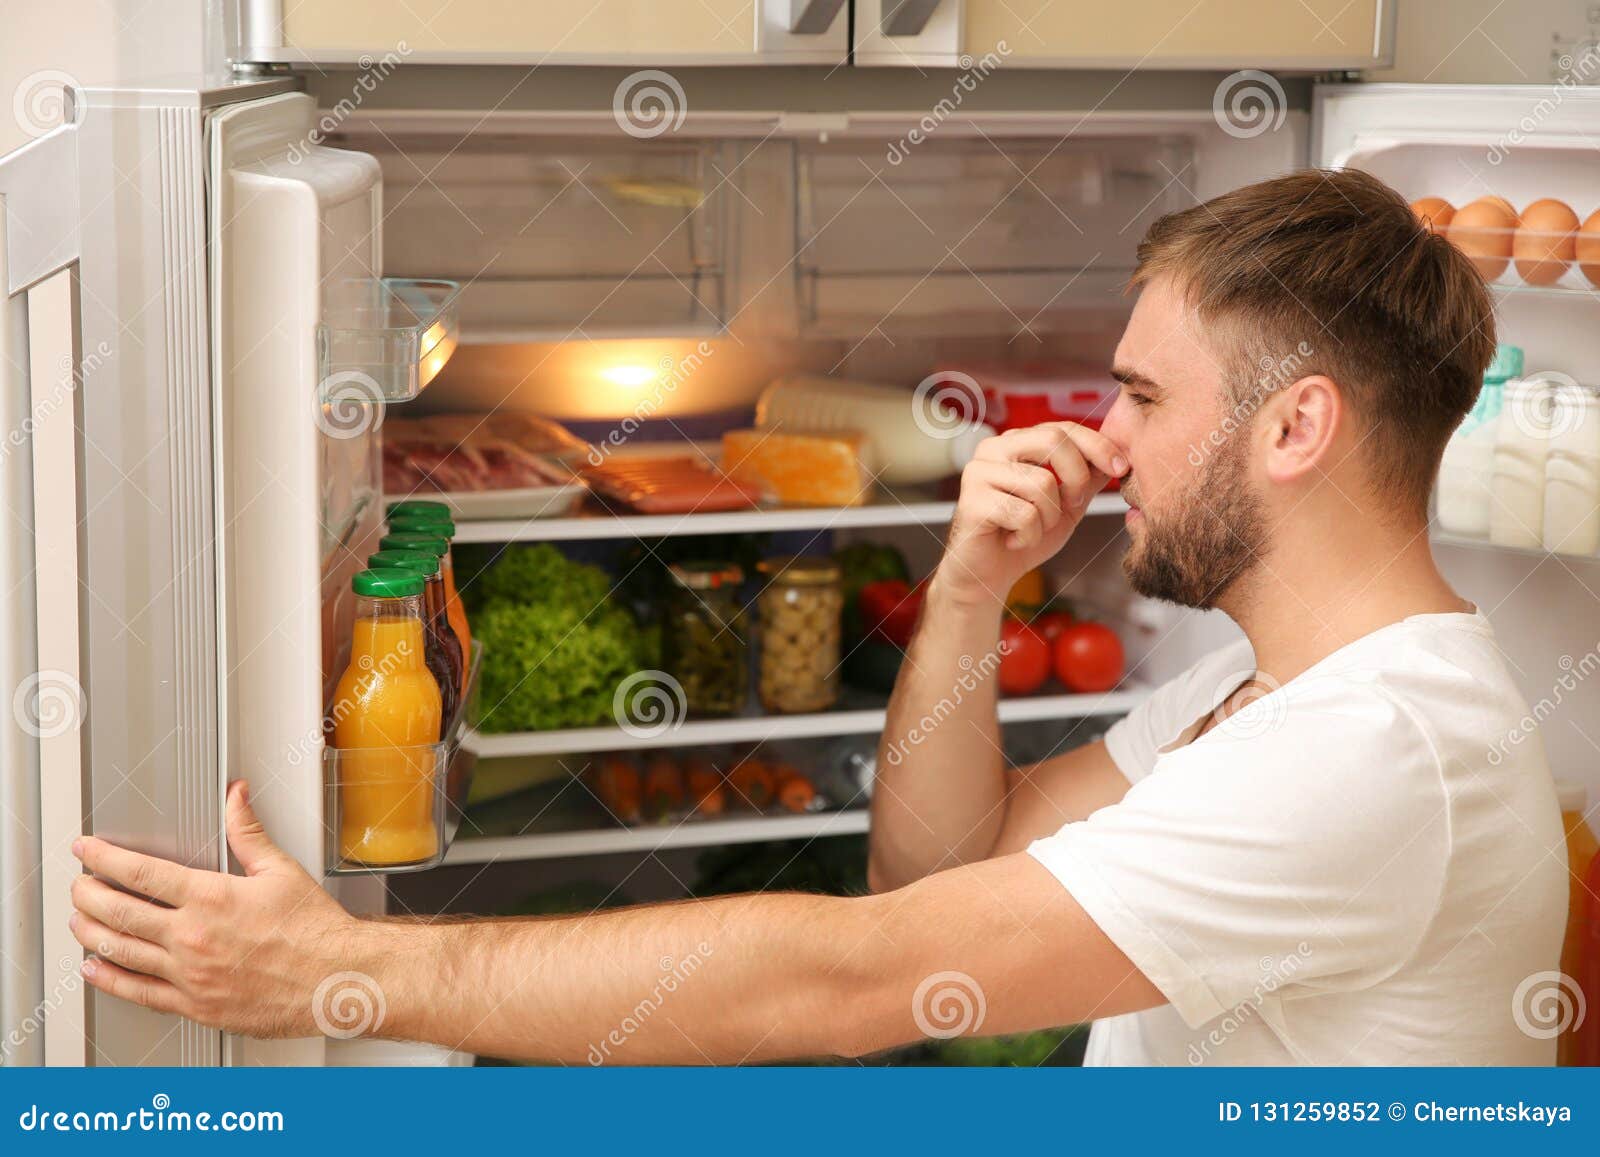 Воняет холодильник. Вонючий холодильник. Запах еды. Уборка холодильника. Запах из холодильника.